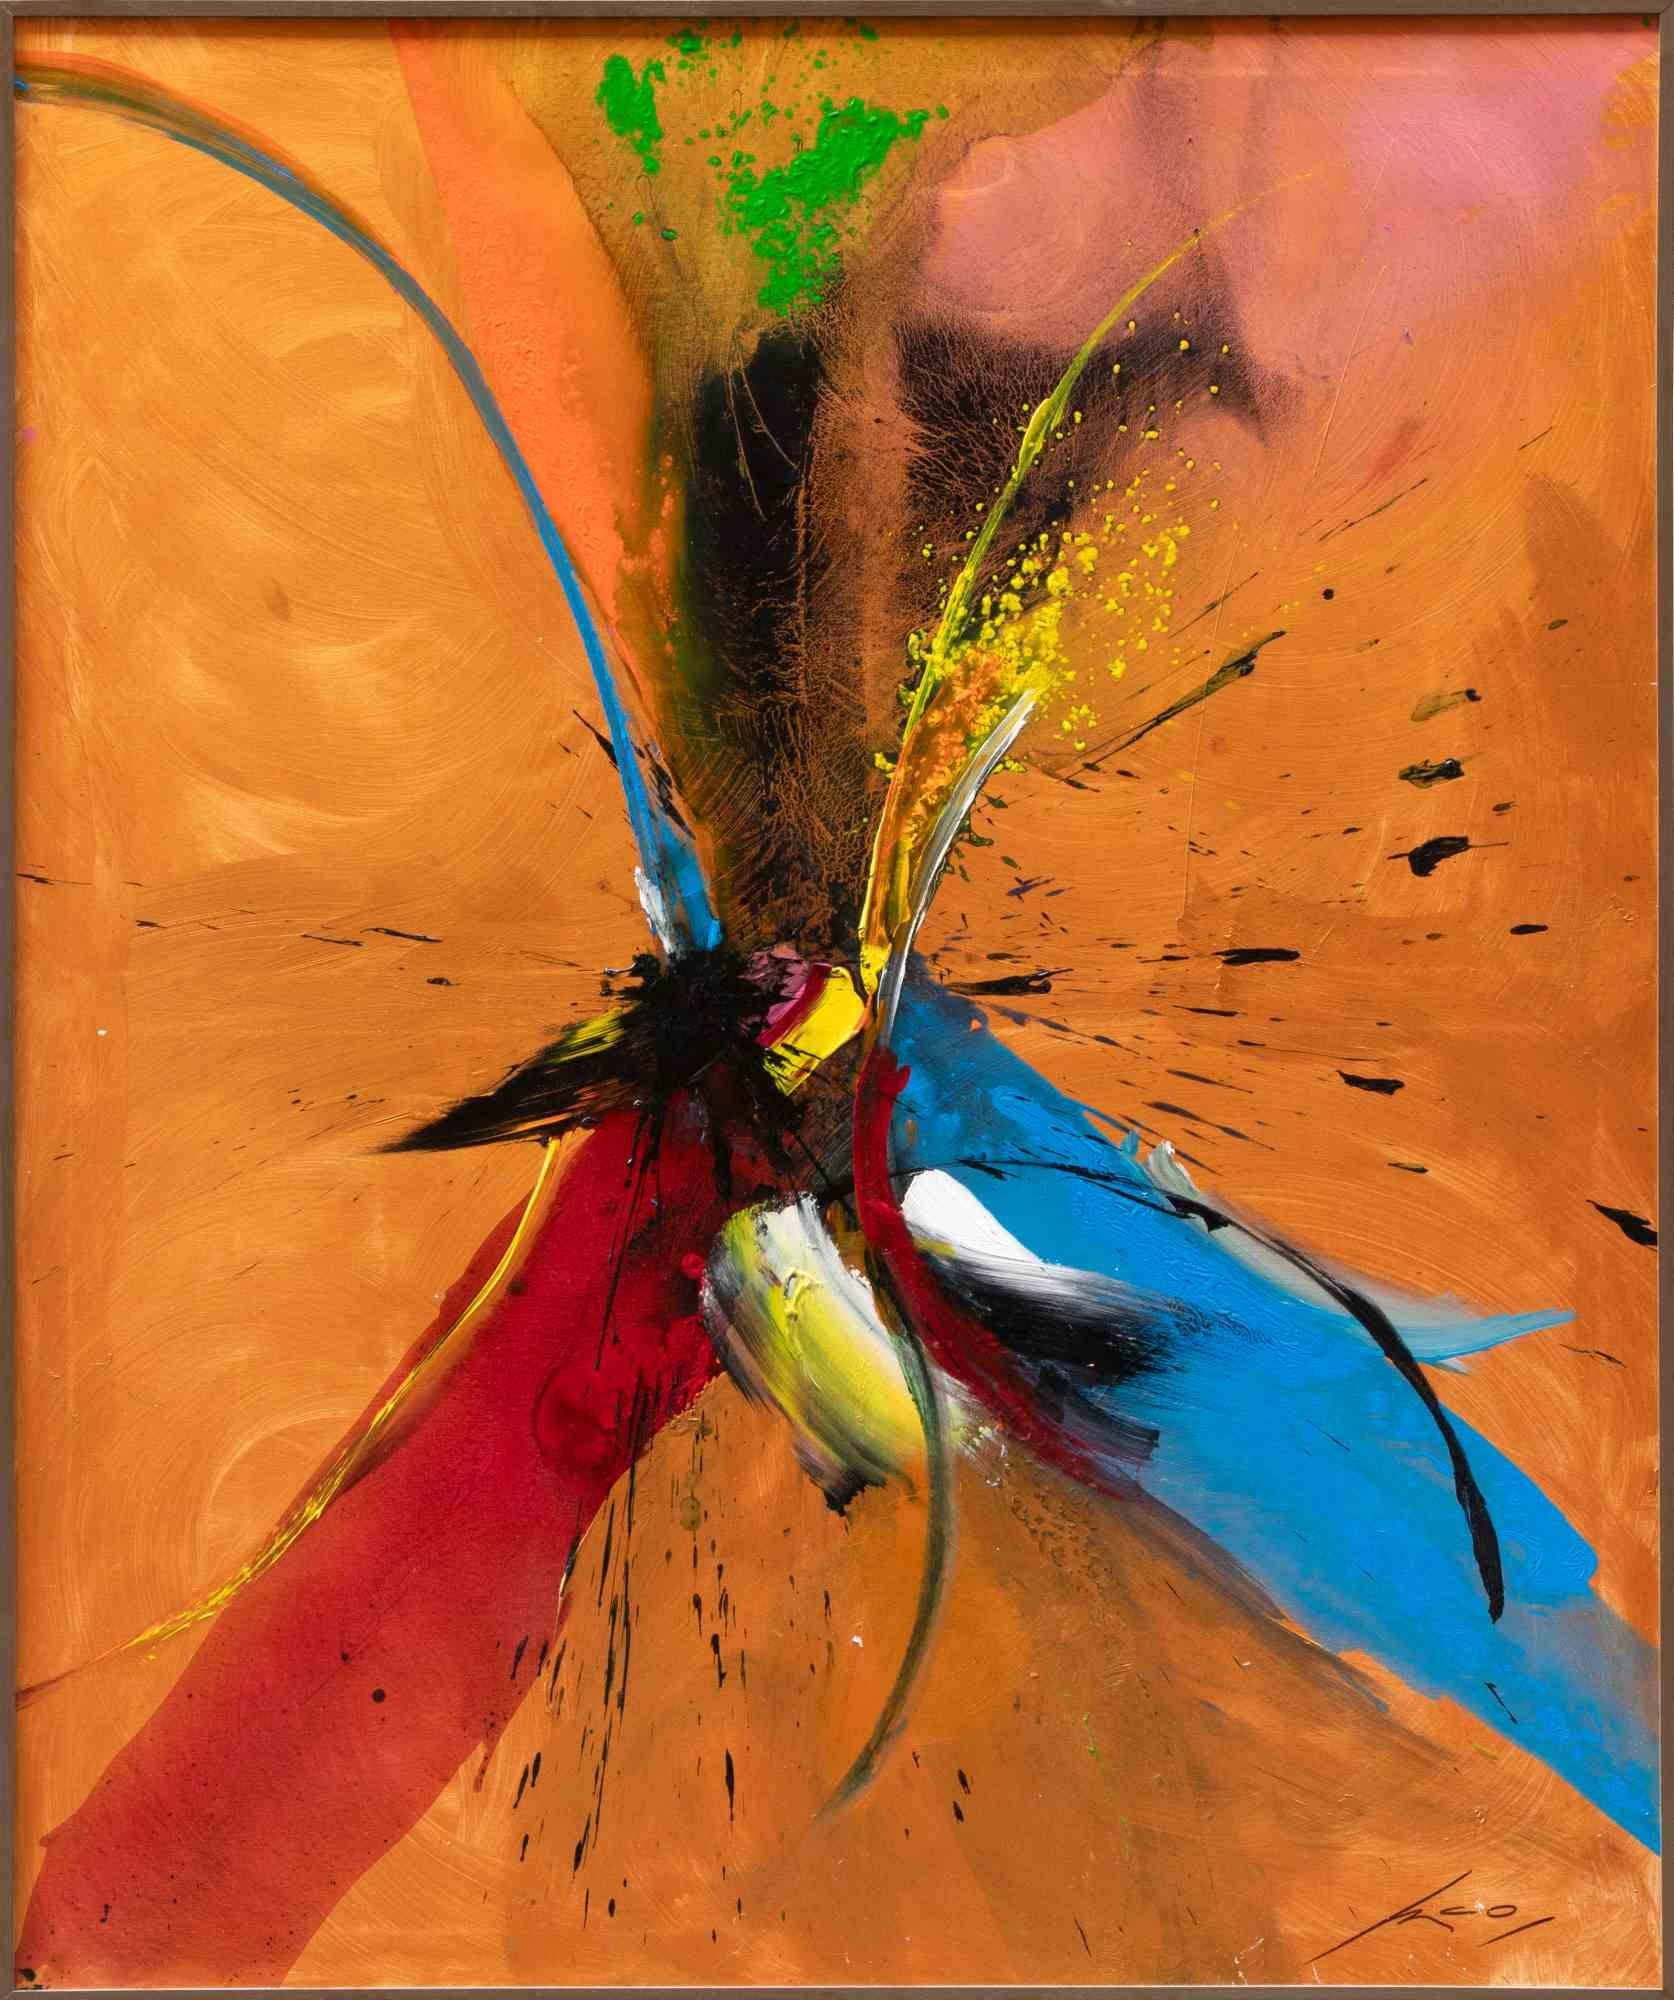 Abstract Composition ist ein zeitgenössisches Kunstwerk des Künstlers Nico Van Lucas.

Gemischtes farbiges Öl und Acryl auf Leinwand.

Handsigniert am unteren Rand.

Unterschrift auf der Rückseite.

Nico Van Lucas ist das künstlerische Pseudonym des